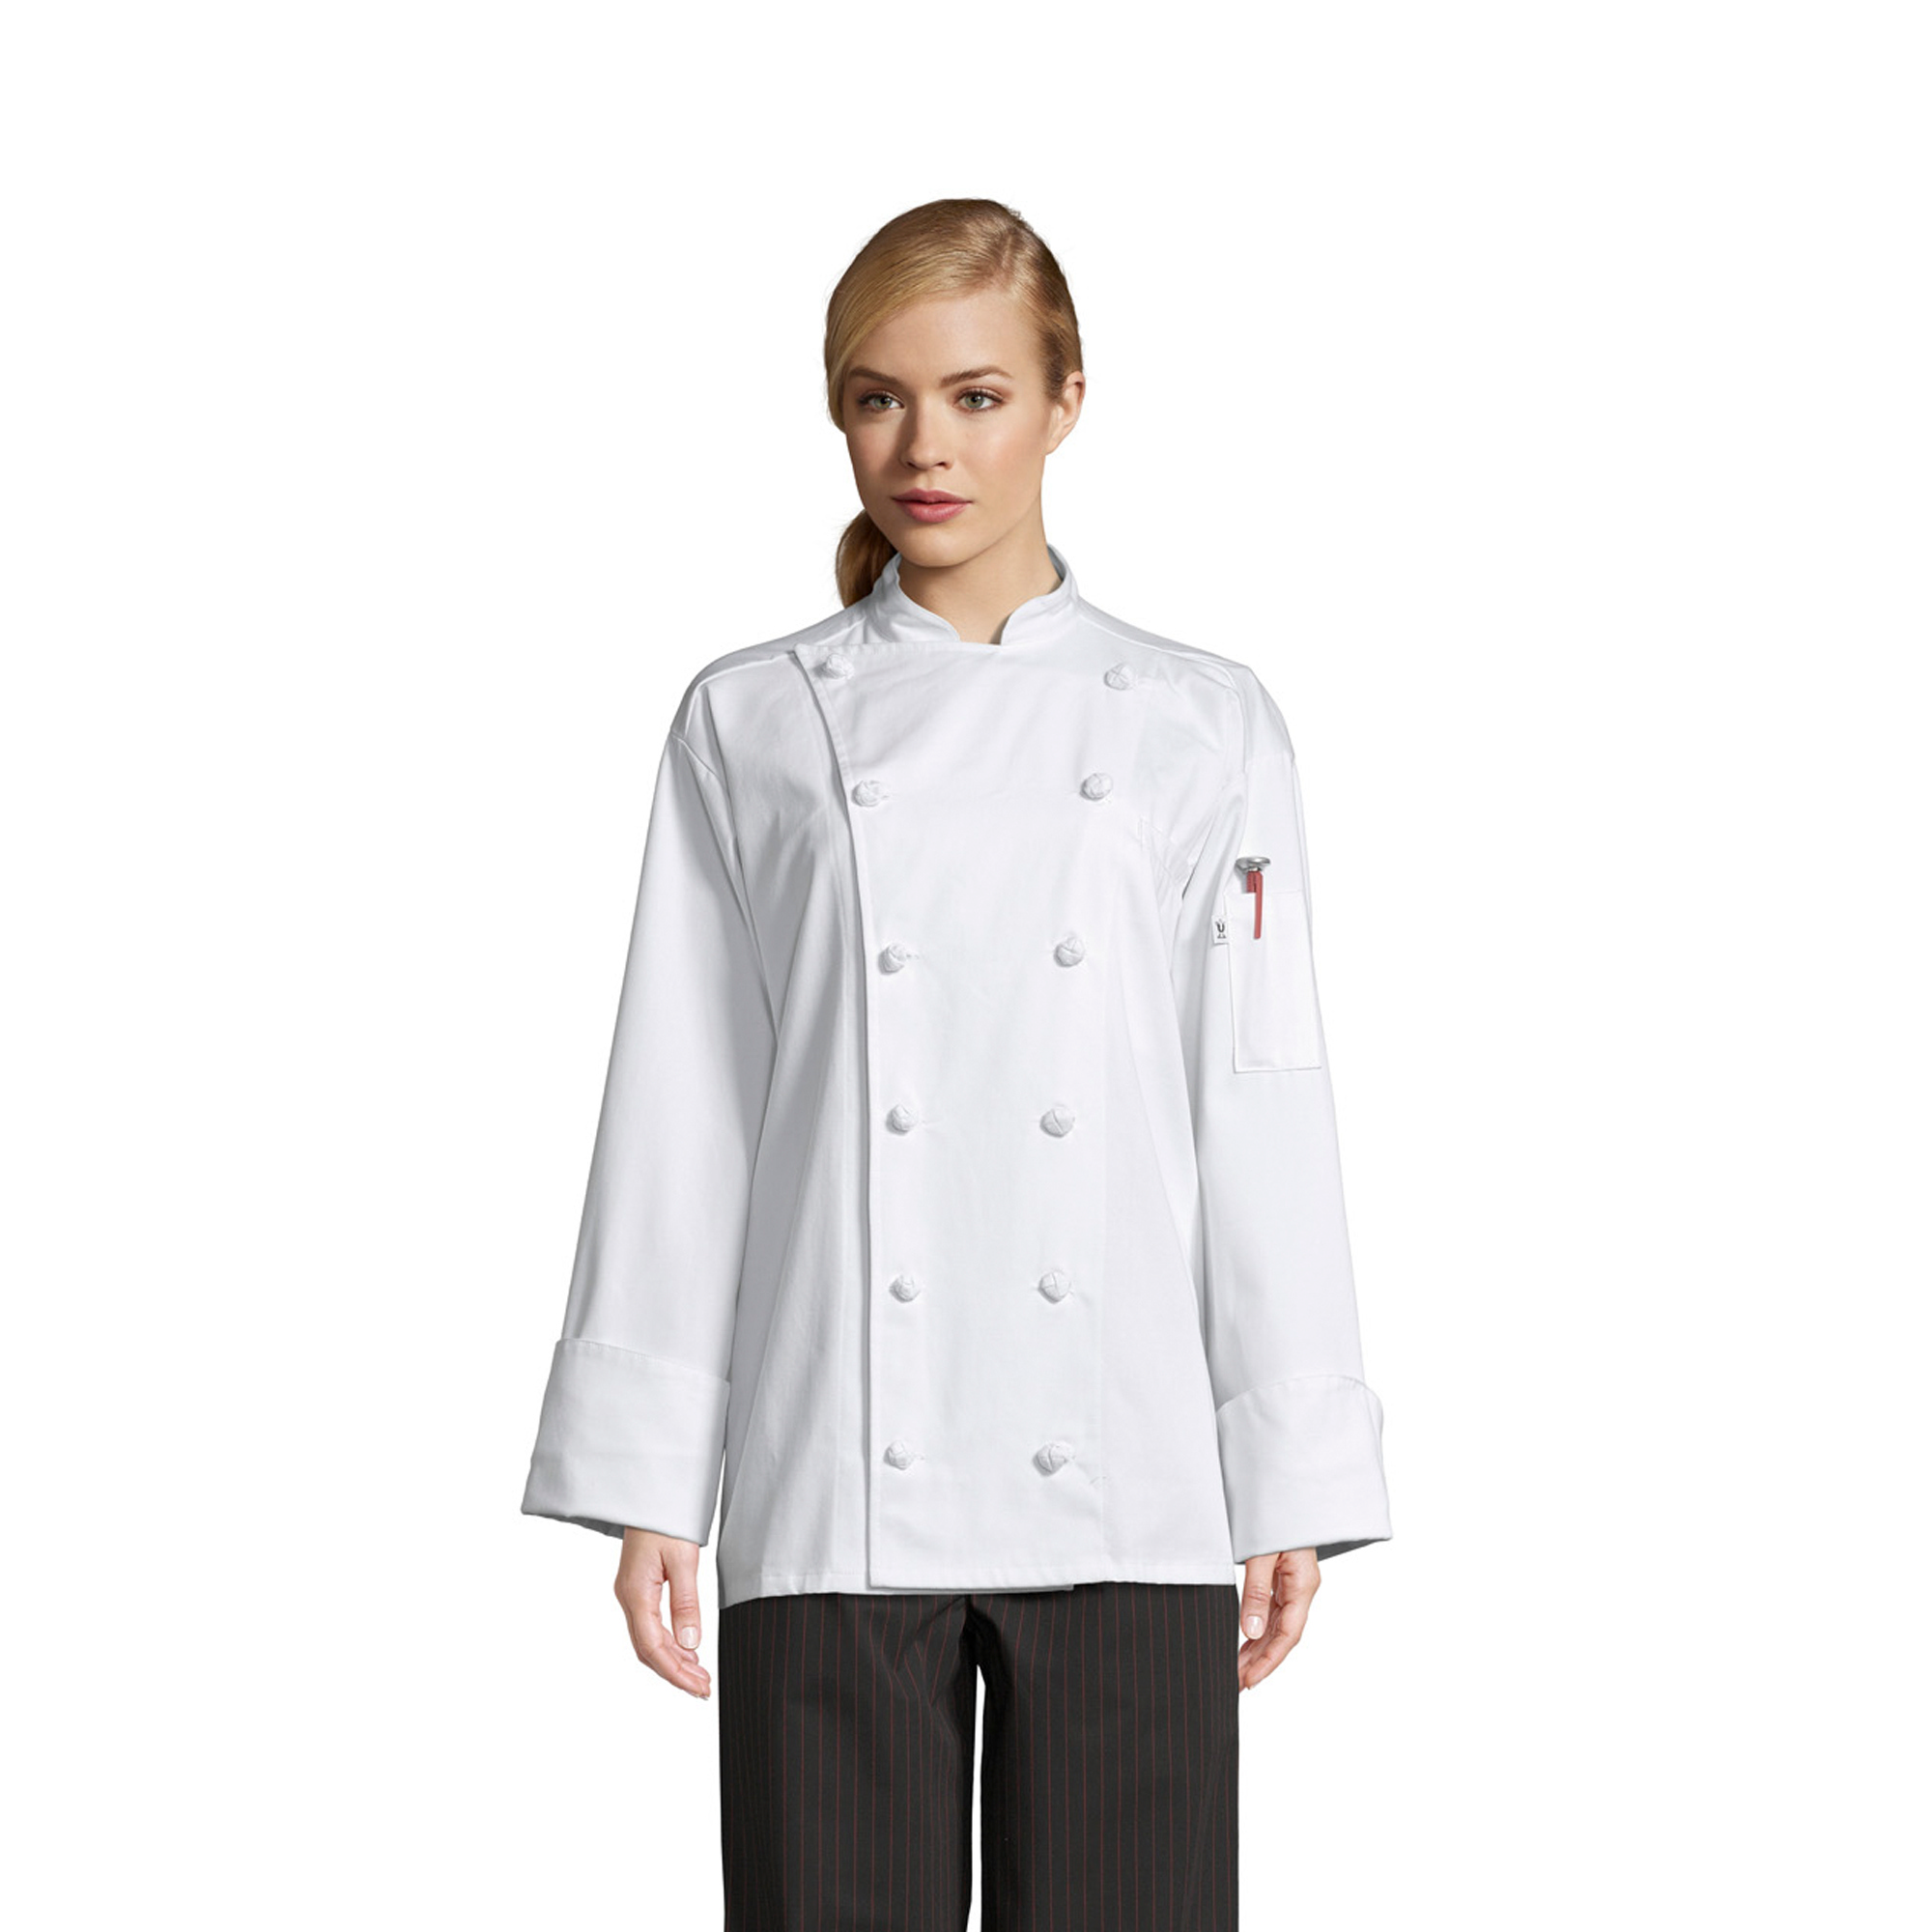 0425C Executive Chef Coat